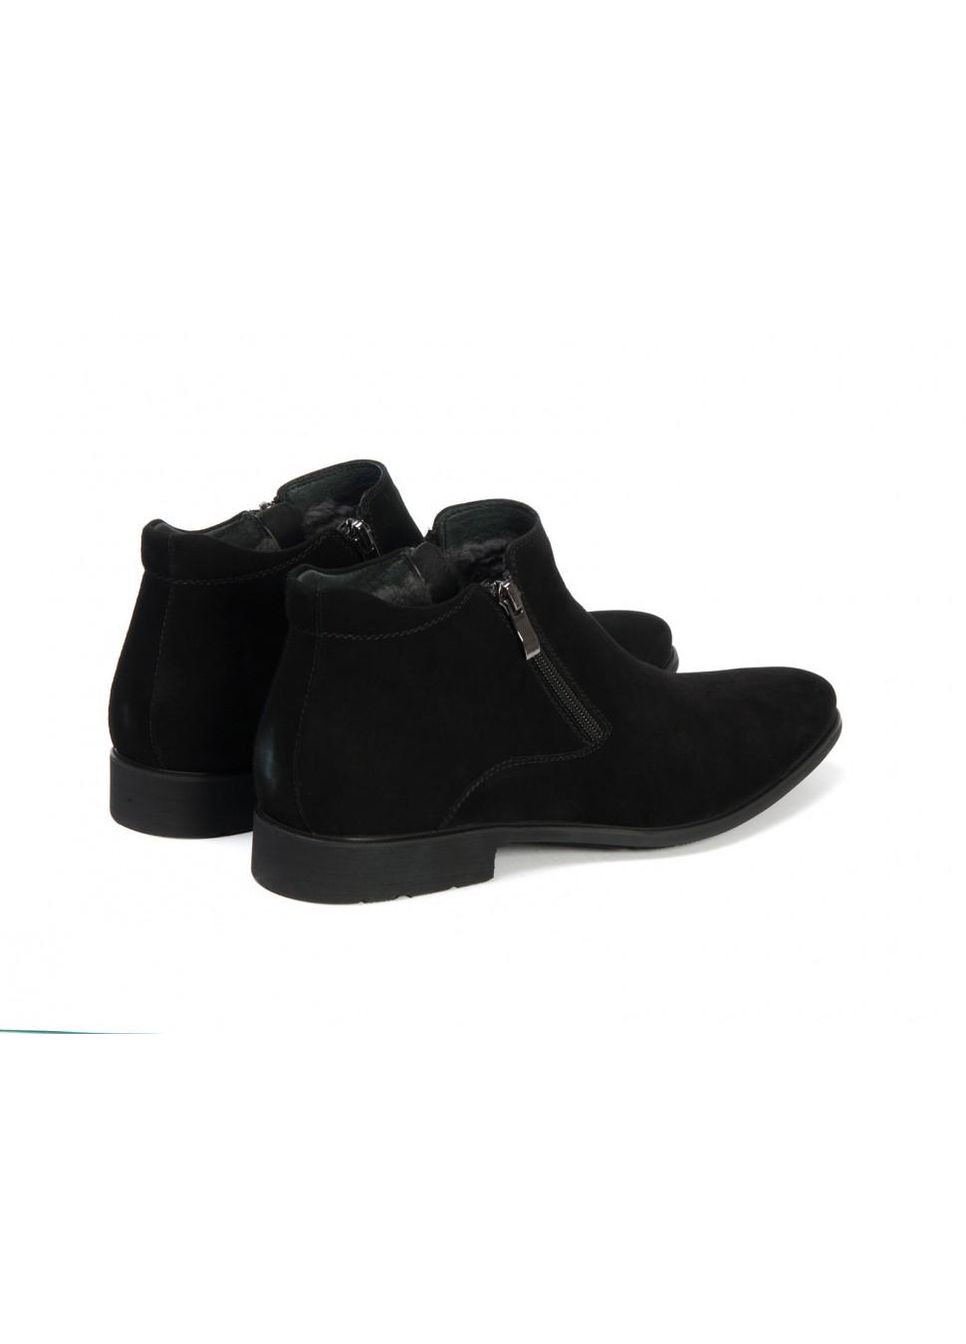 Черные зимние ботинки 7144453 цвет черный Carlo Delari